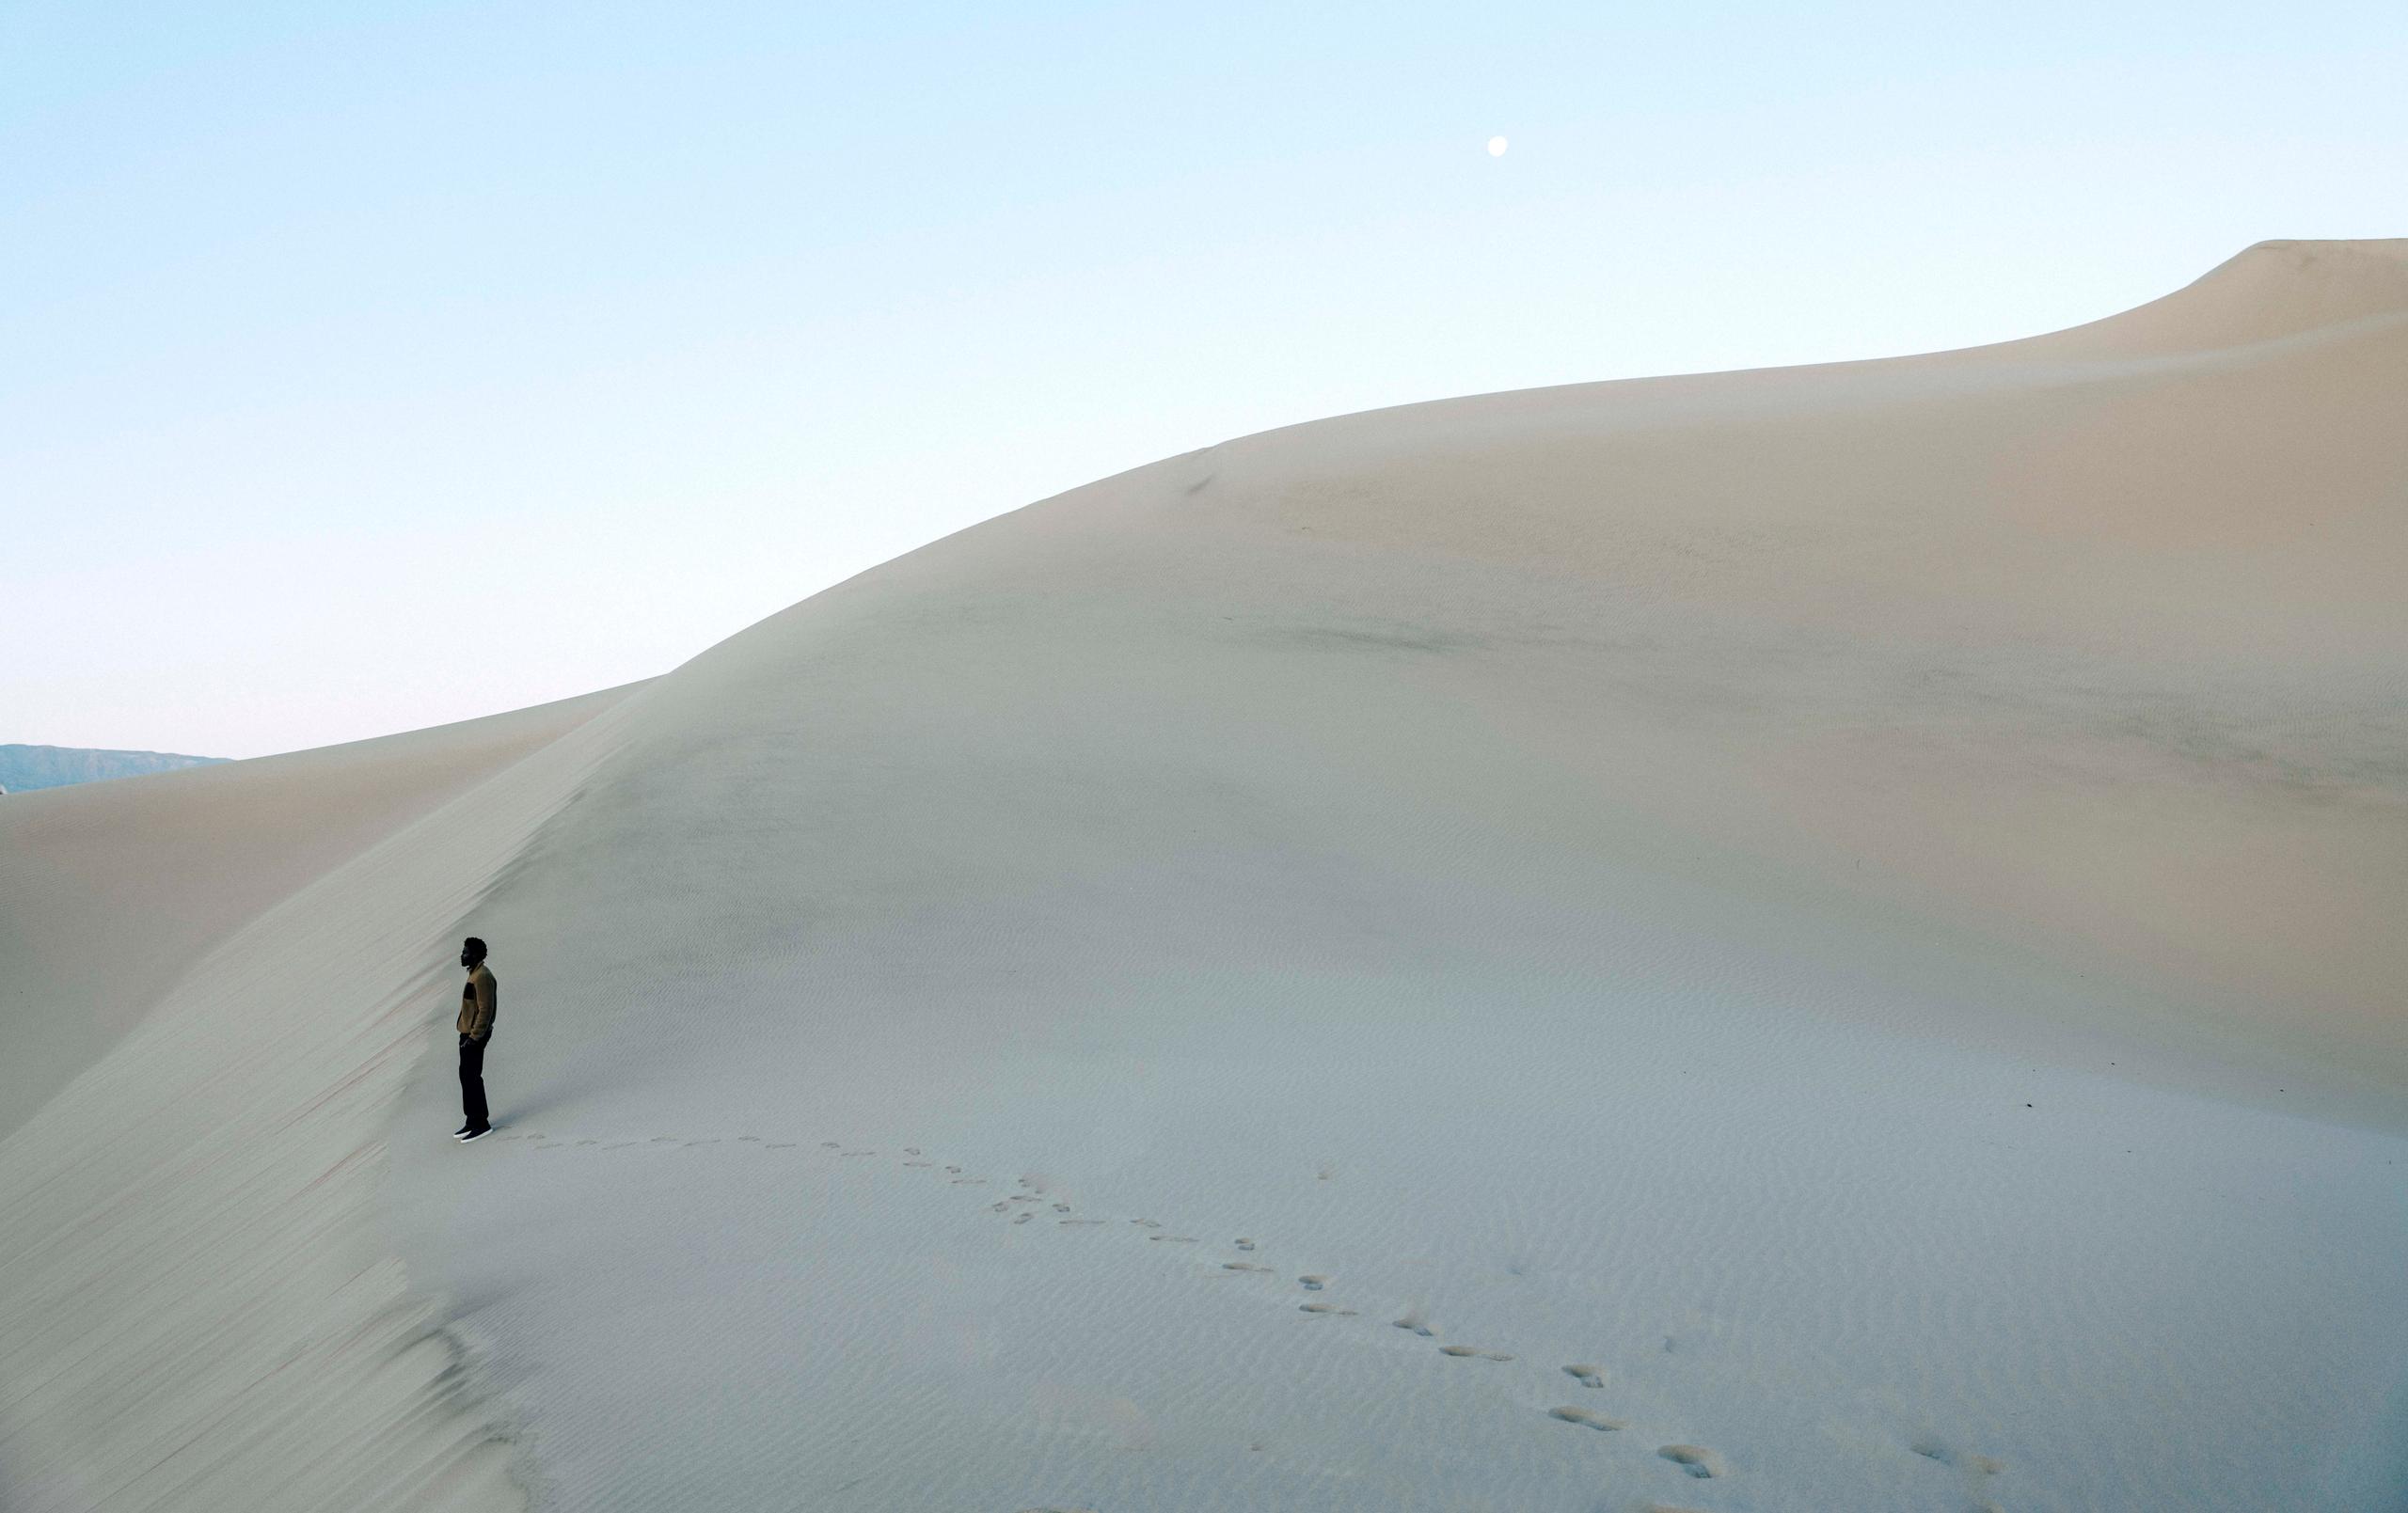 Man in Walsh Full-Zip standing on the desert.